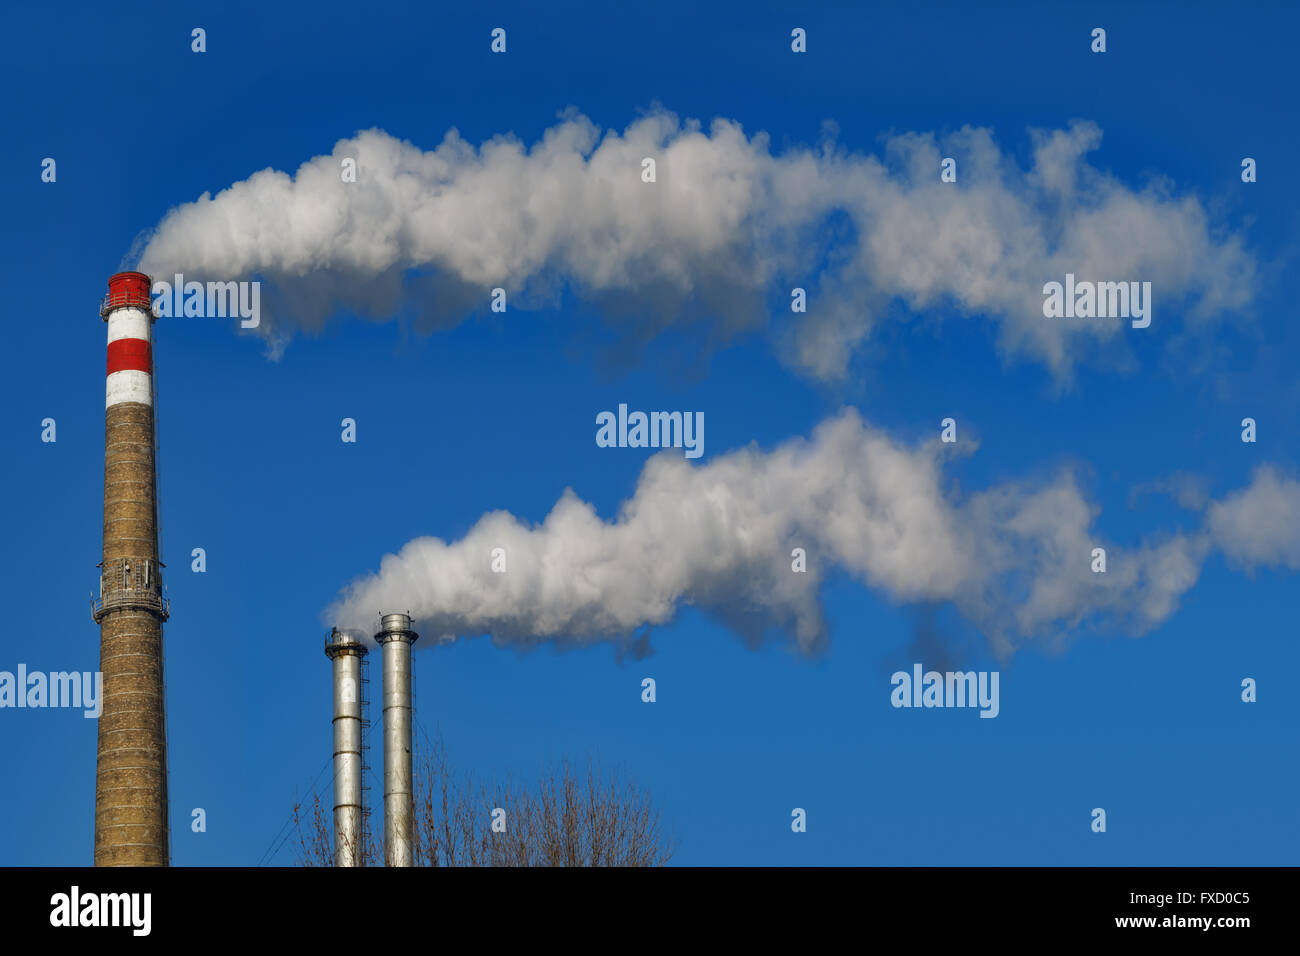 Schornsteine Rauchen.  Rohre emittiert lange Rauchfahne auf blauen Himmelshintergrund. Stockfoto